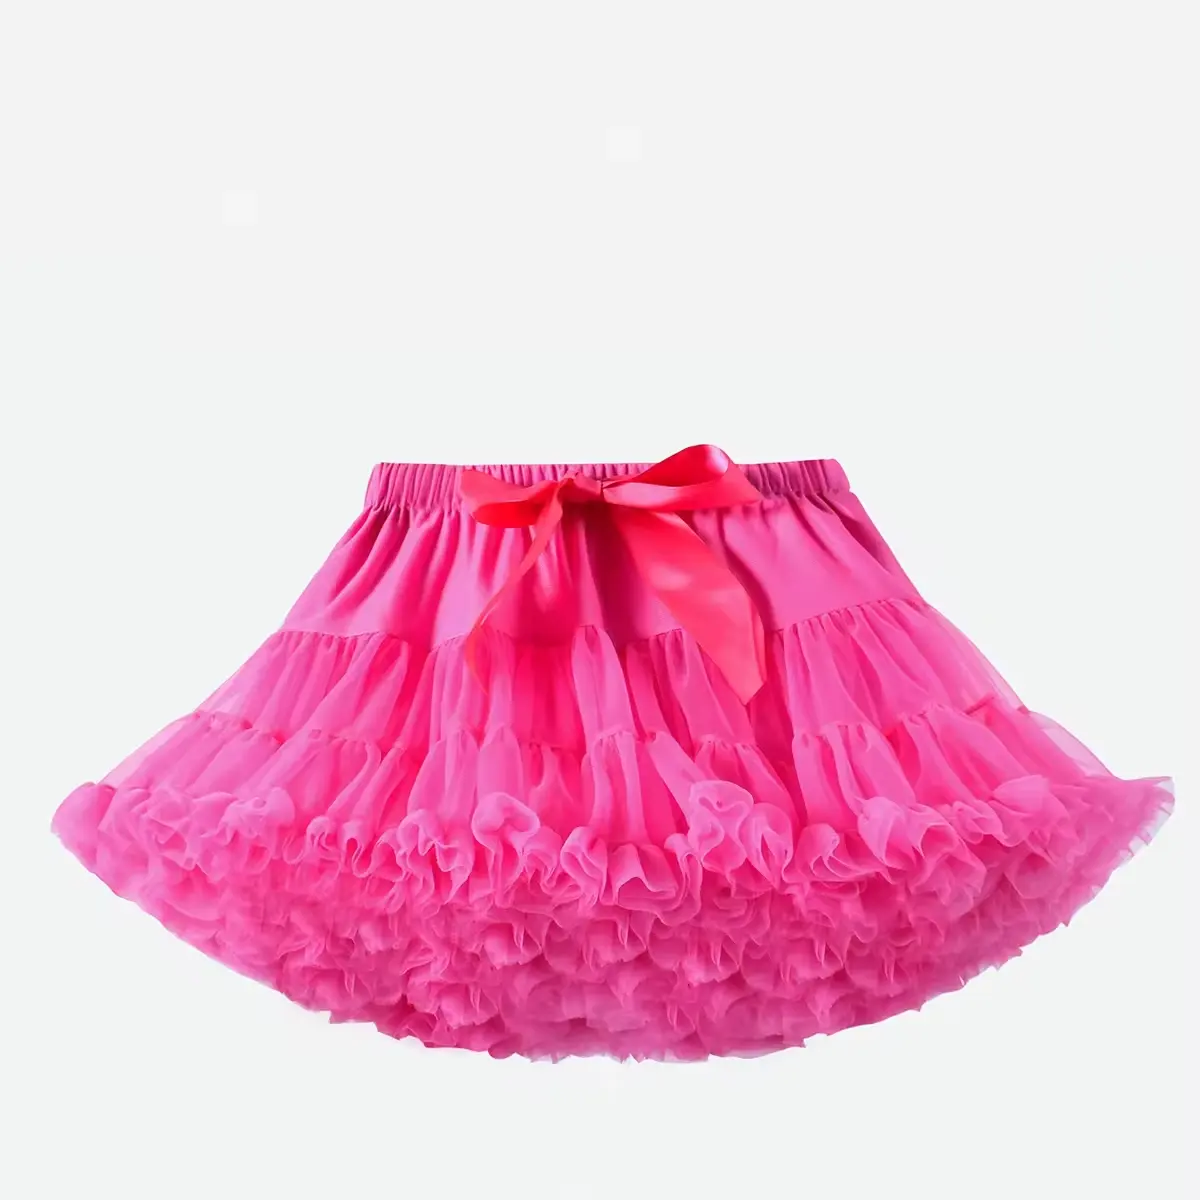 Mode conception personnalisée nouvel été lolita style femmes tutu jupe filles taille élastique tulle jupes moelleuses